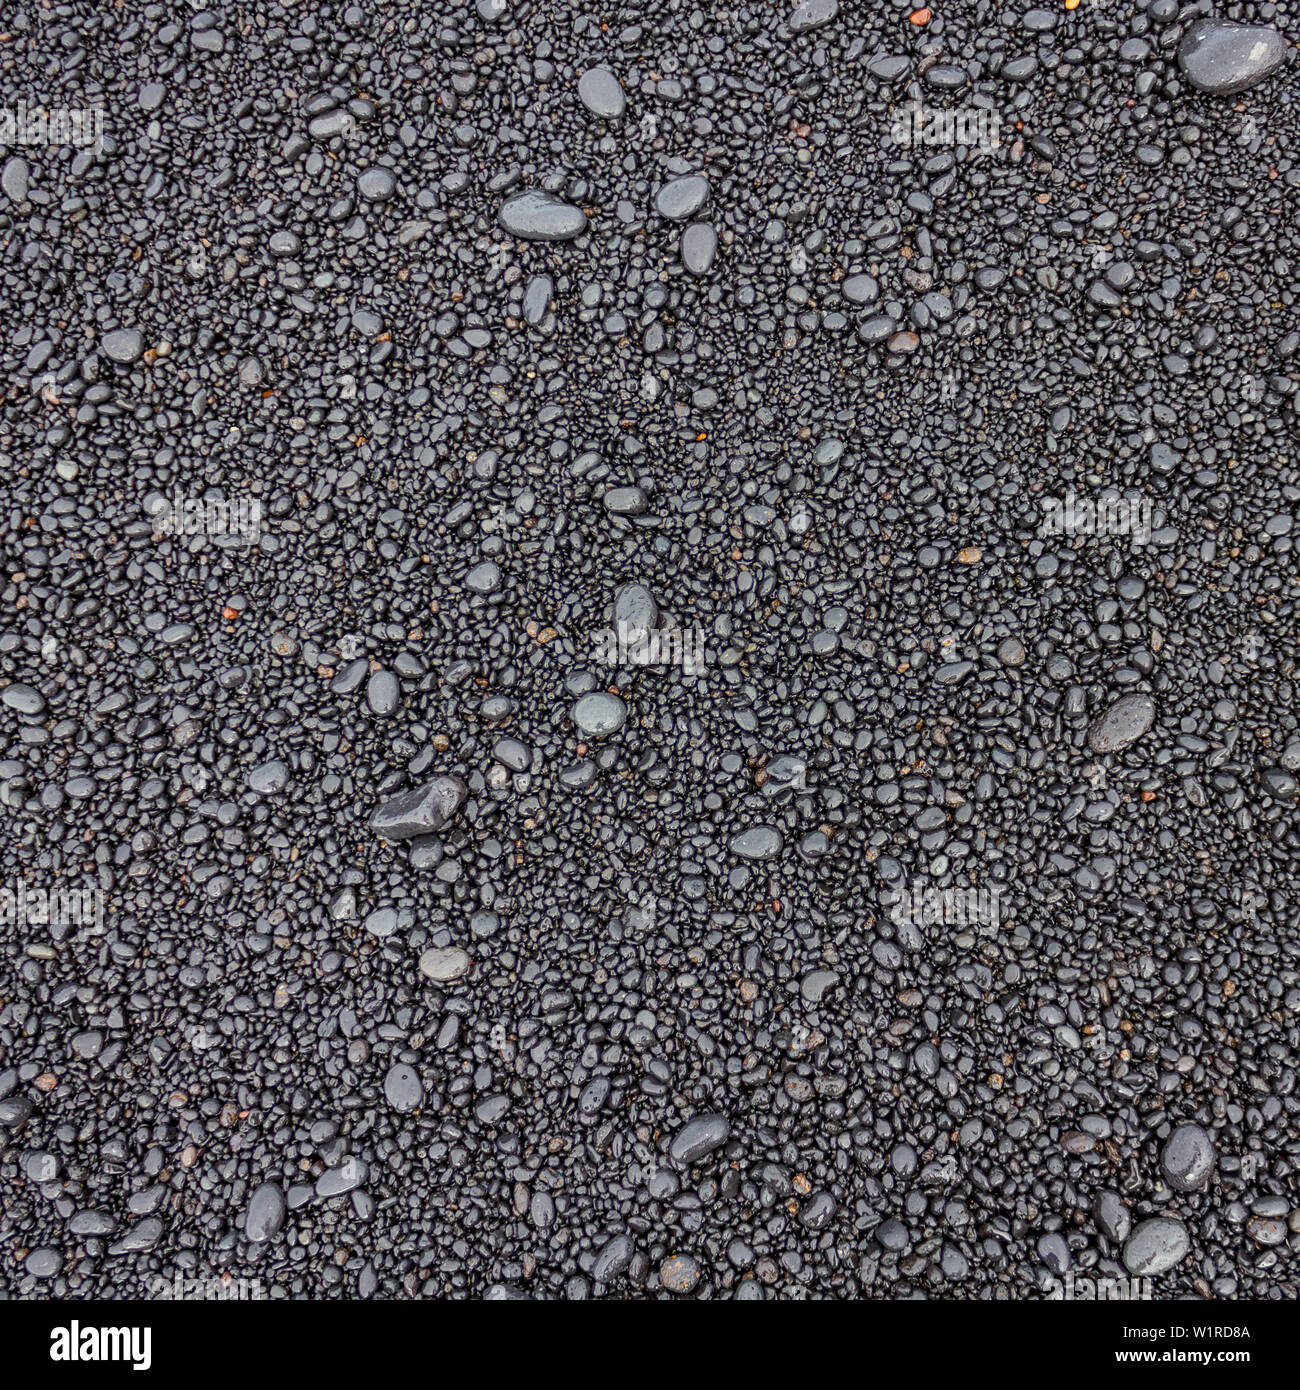 Di piccola taglia spiaggia bagnata di pietre di origine vulcanica con una varietà di forme arrotondate e colori grigi come una texture di sfondo Foto Stock